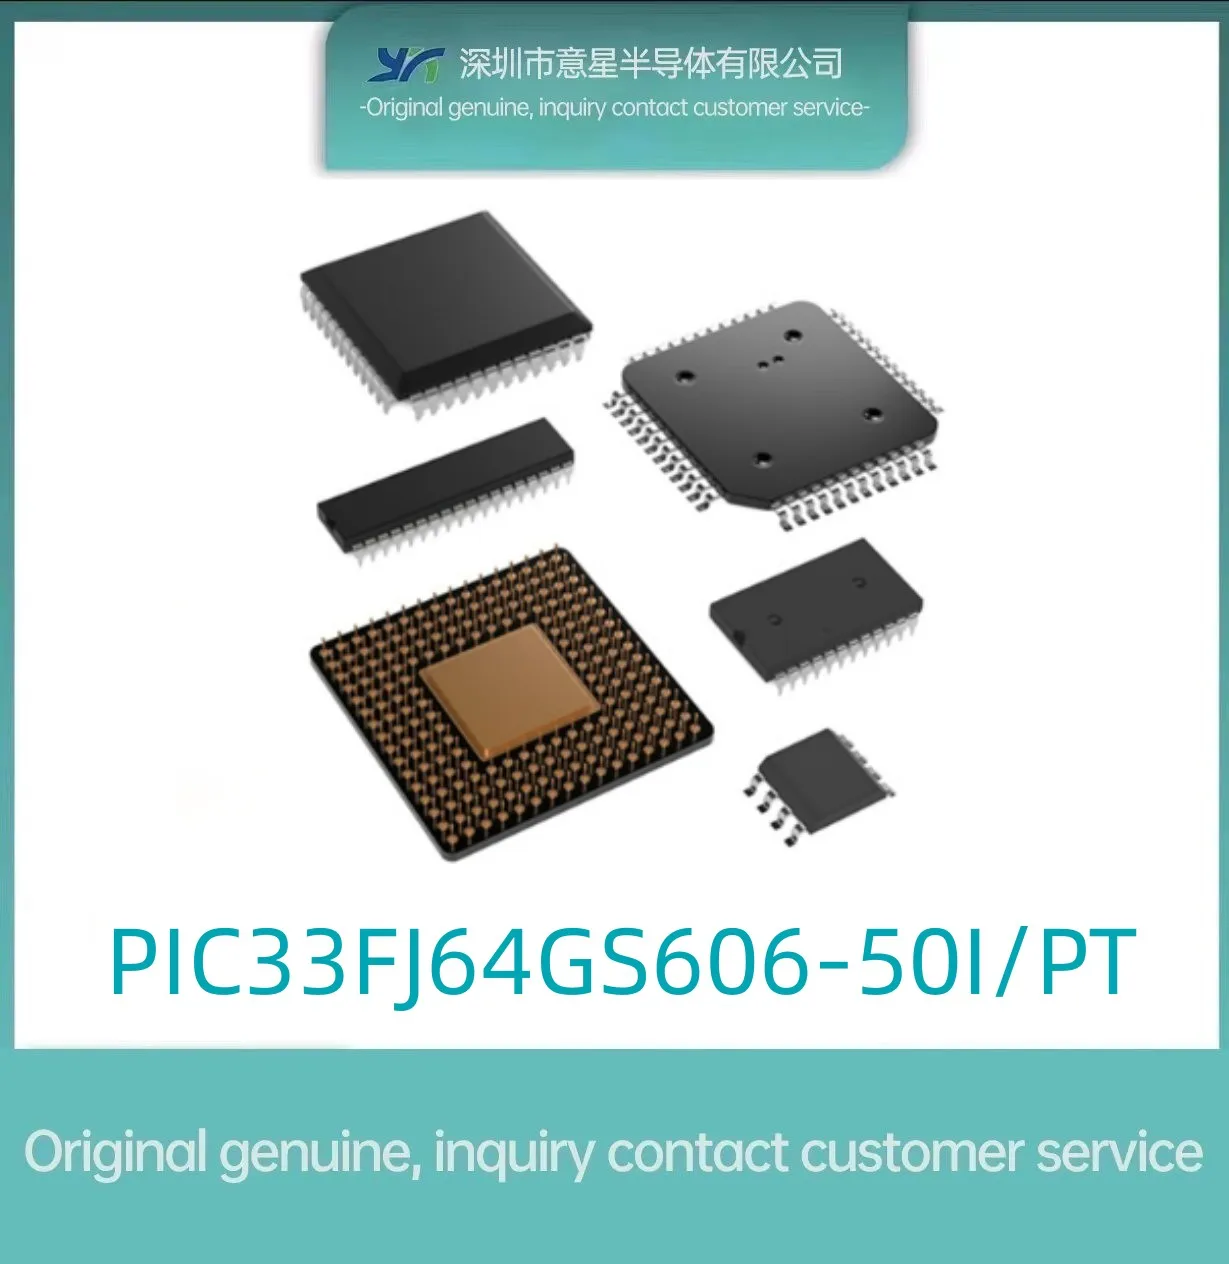 PIC33FJ64GS606-50I/PT пакет QFP64 цифровой сигнальный процессор и контроллер оригинальный подлинный